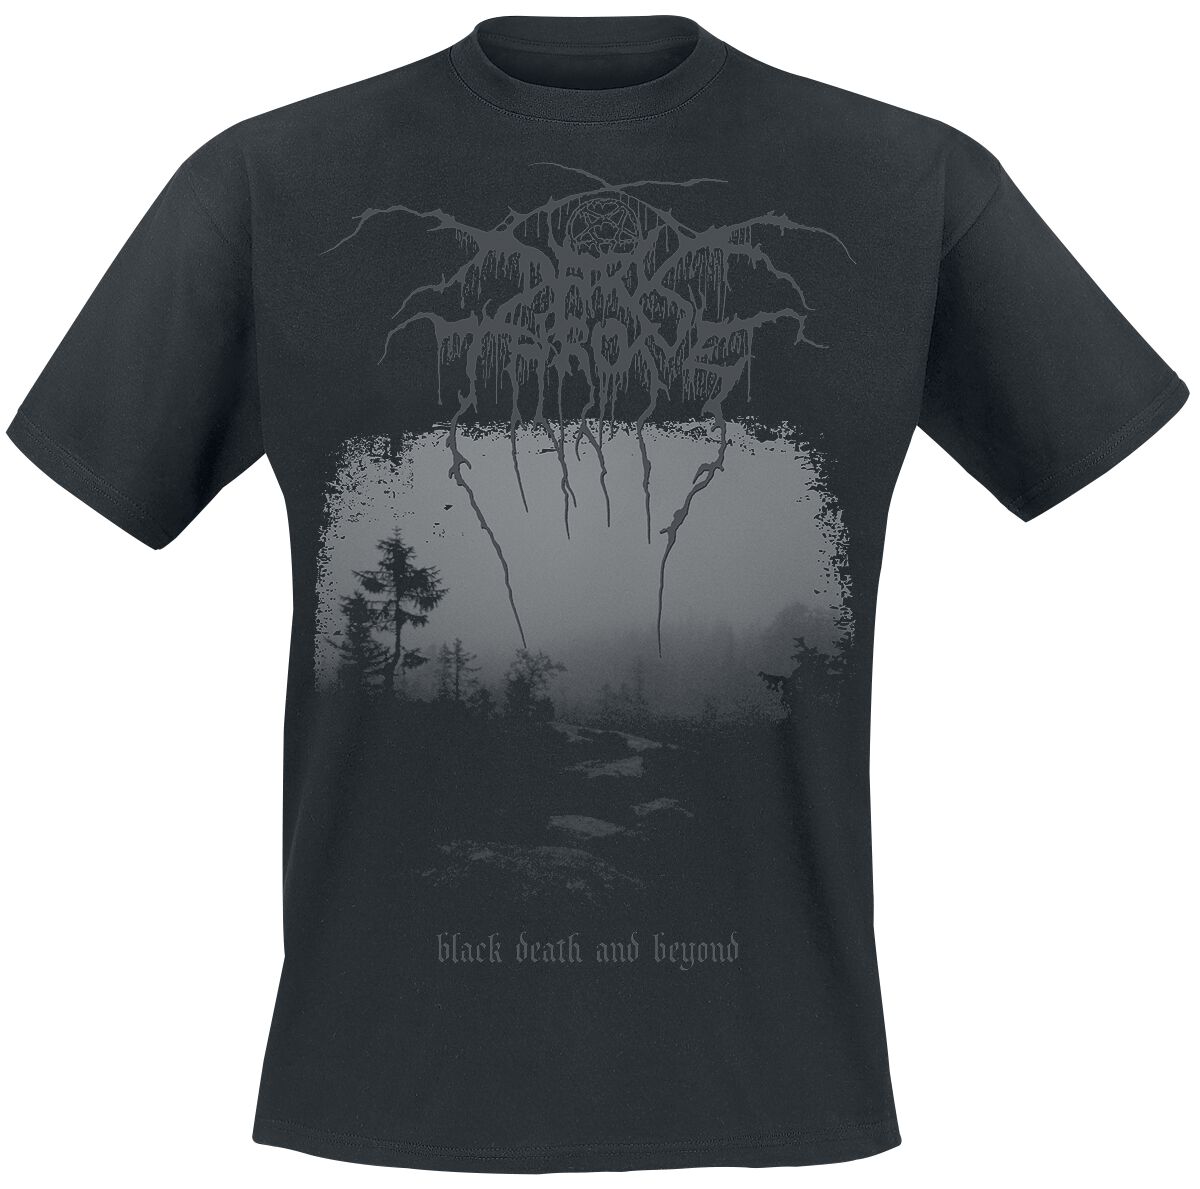 Darkthrone T-Shirt - Black death and beyond - S bis XL - für Männer - Größe L - schwarz  - Lizenziertes Merchandise!